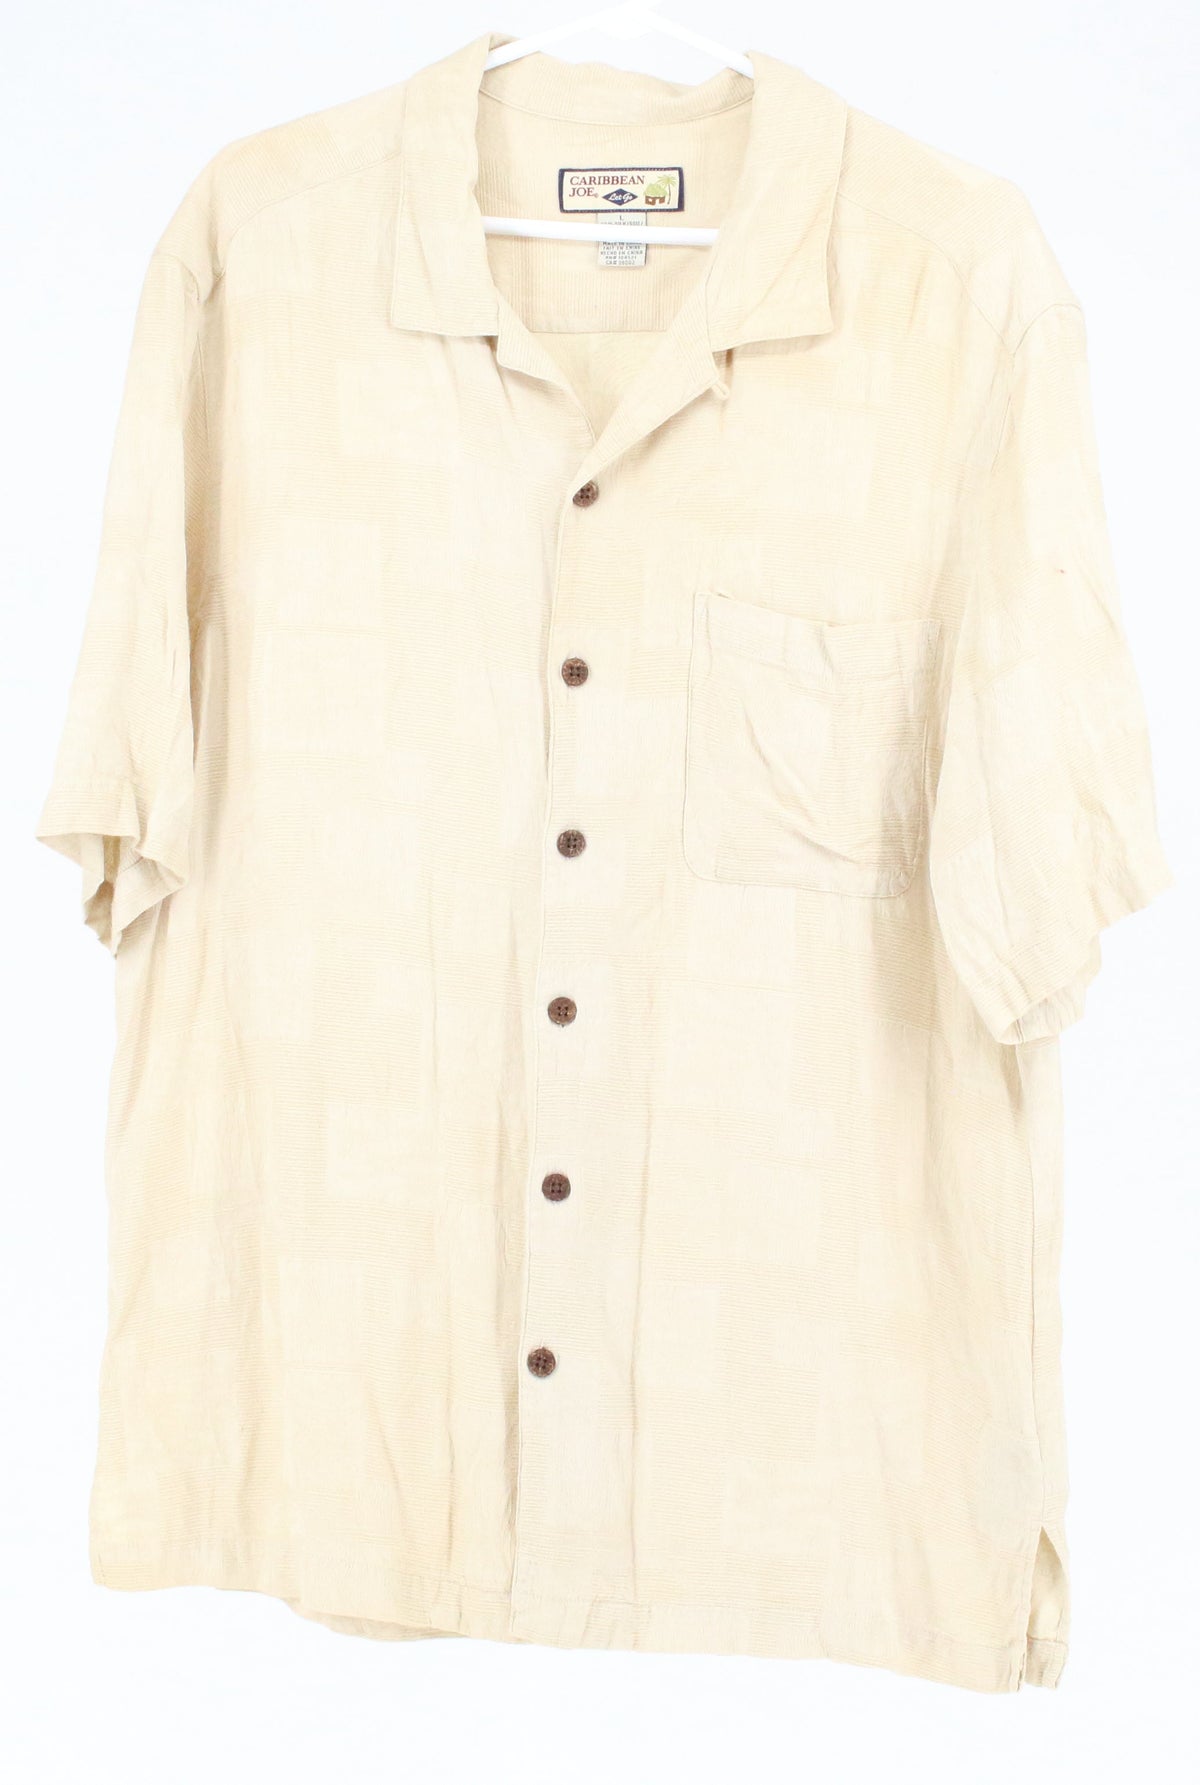 Caribbean Joe Beige Textured Fabric  Button-Up Short Sleeve Shirt